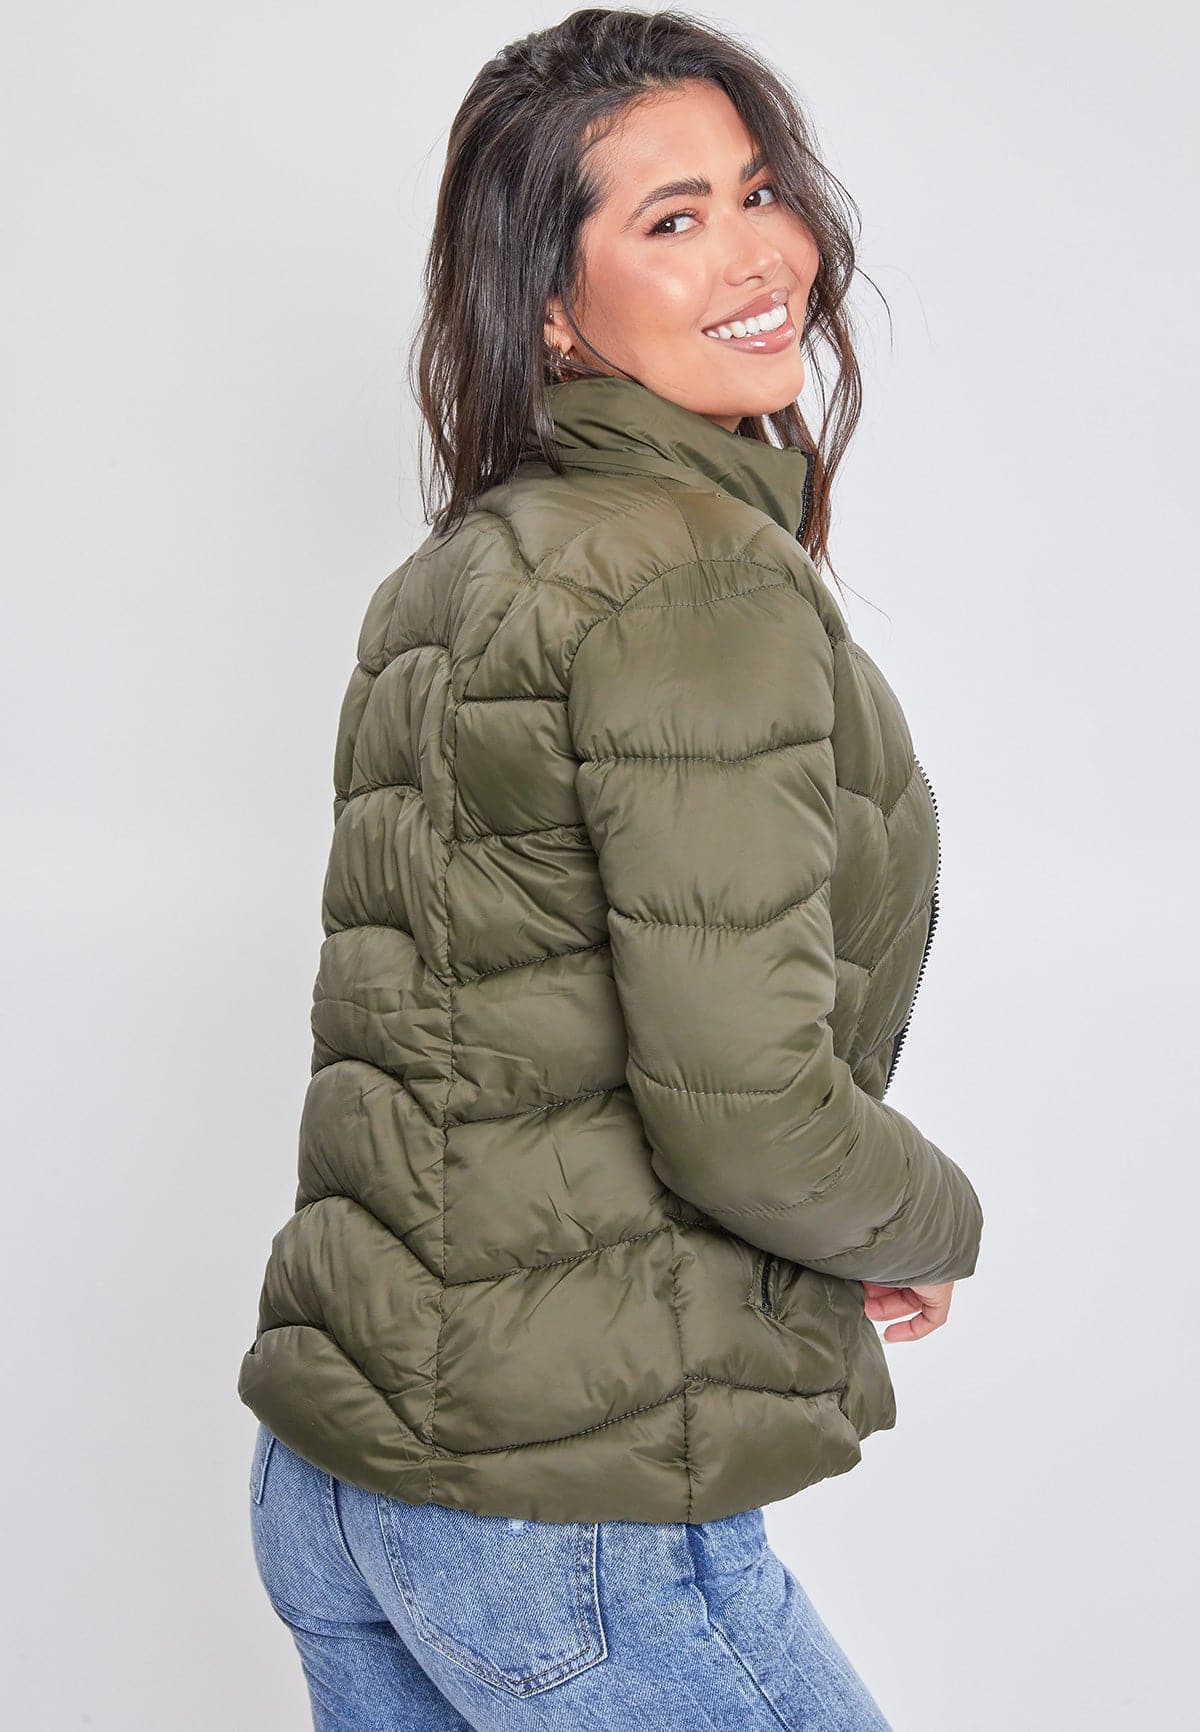 YHIWU Winter Jacket for Women Hooded Women Winter Down Puffer Jacket Women  Warm Lightweight Packable Quilted Puffer Coat